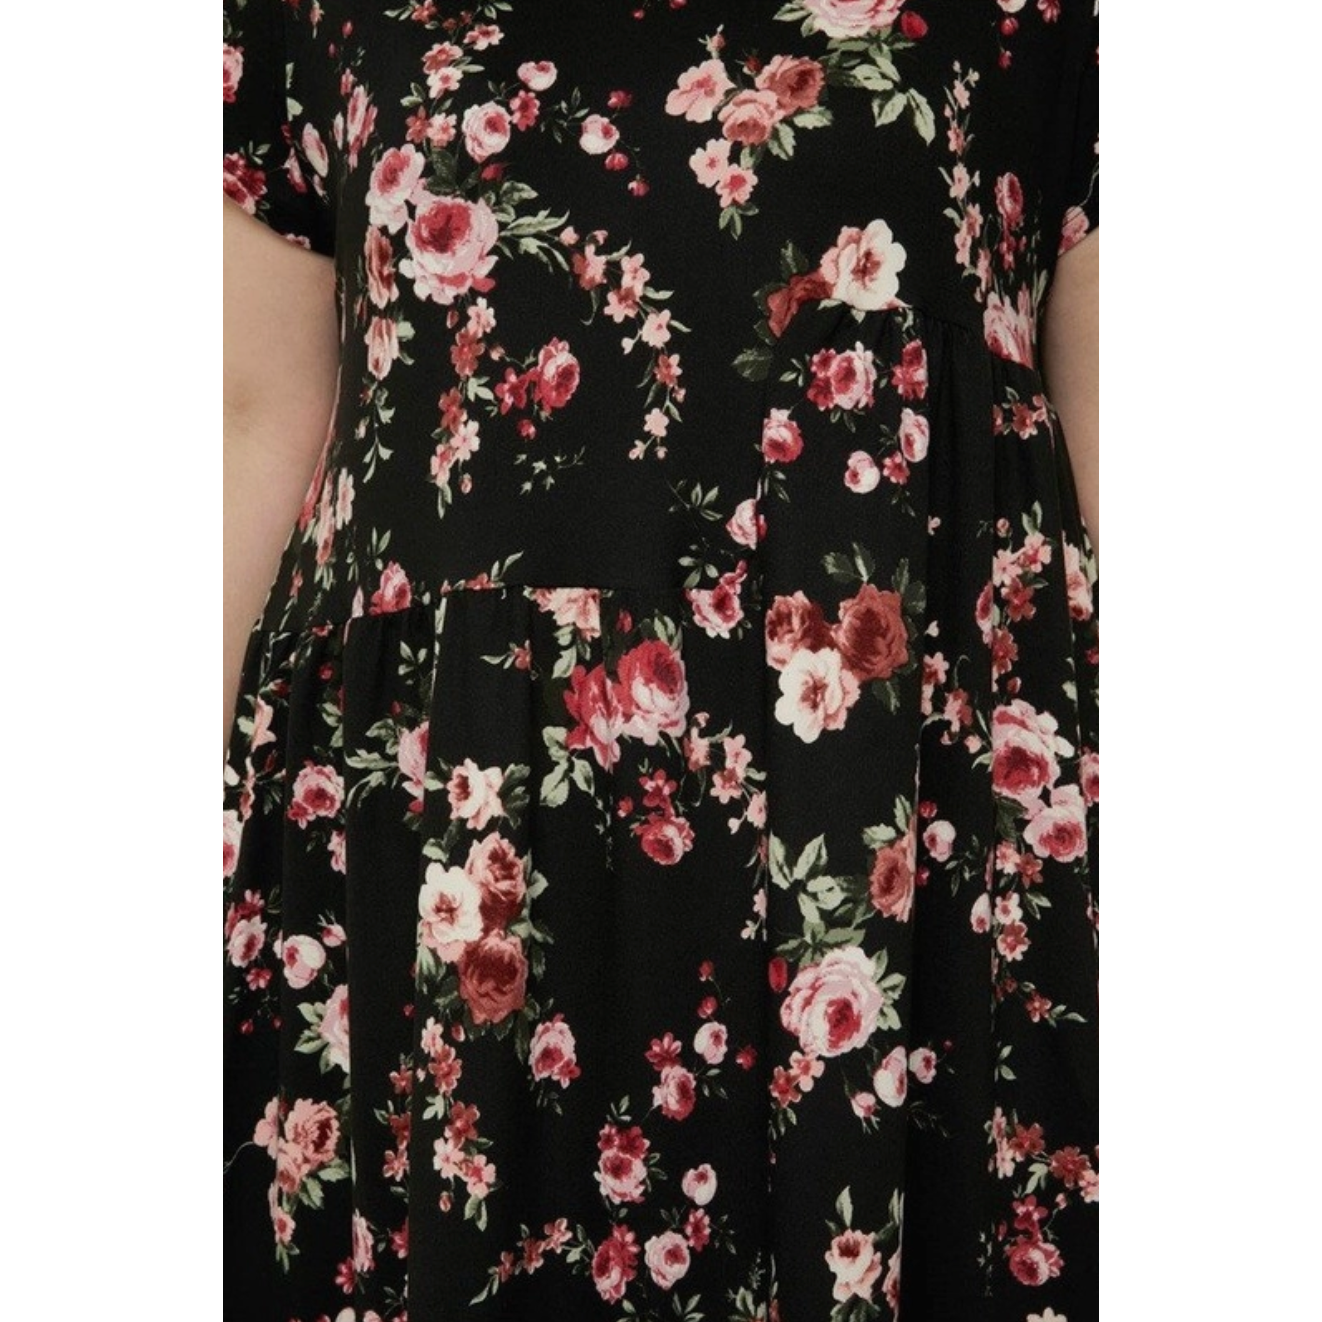 Rose & Black Curvy Fit Floral Dress